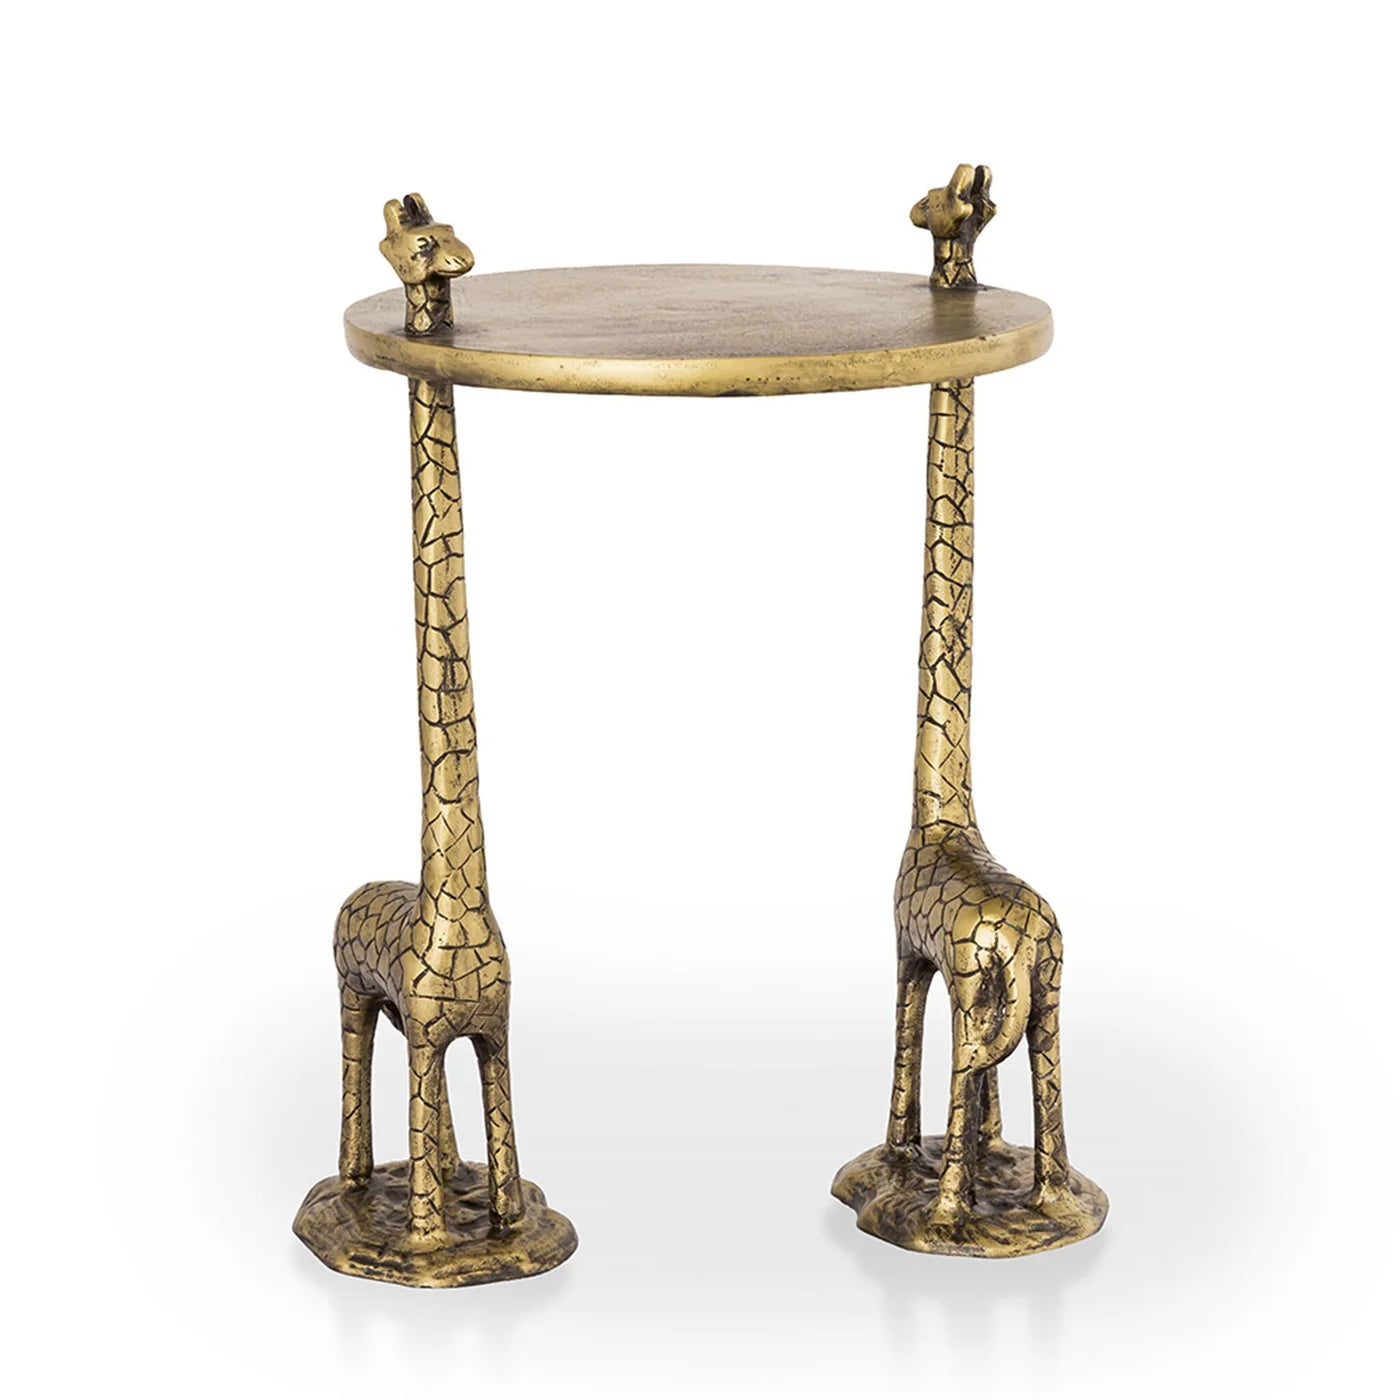 Giraffe Pair End Table